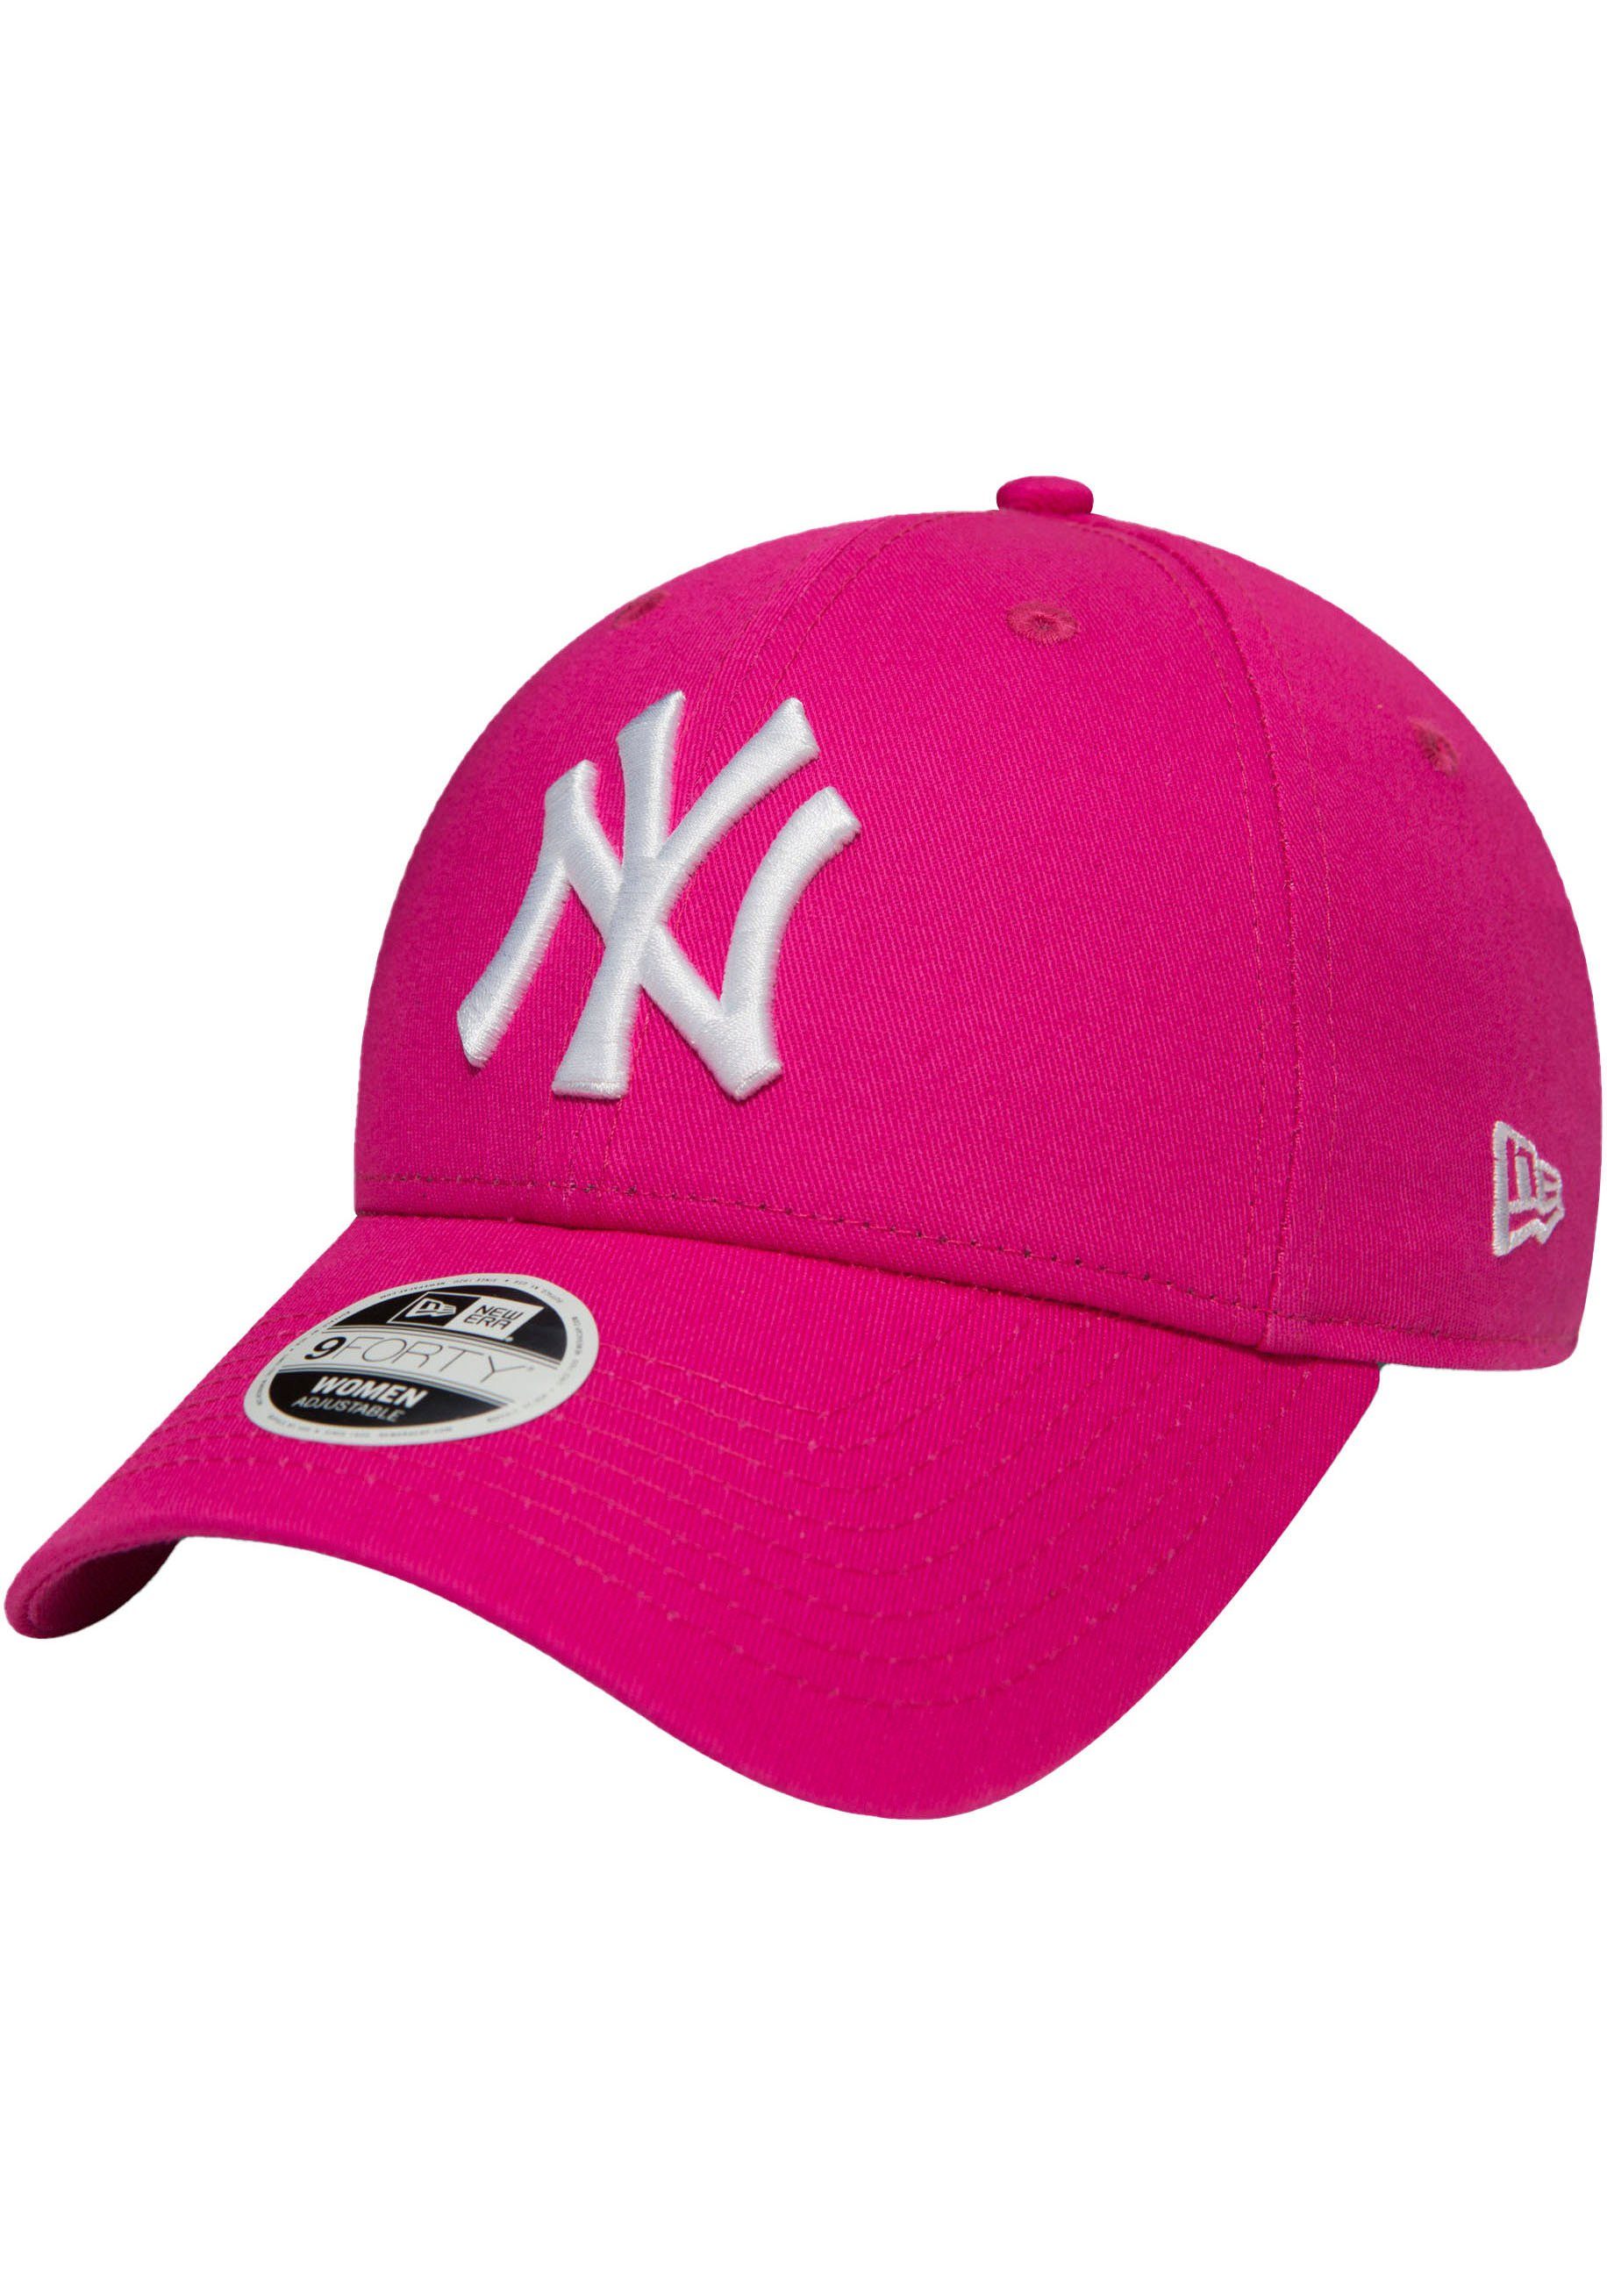 New Era Baseball Cap Basecap NEW YORK YANKEES